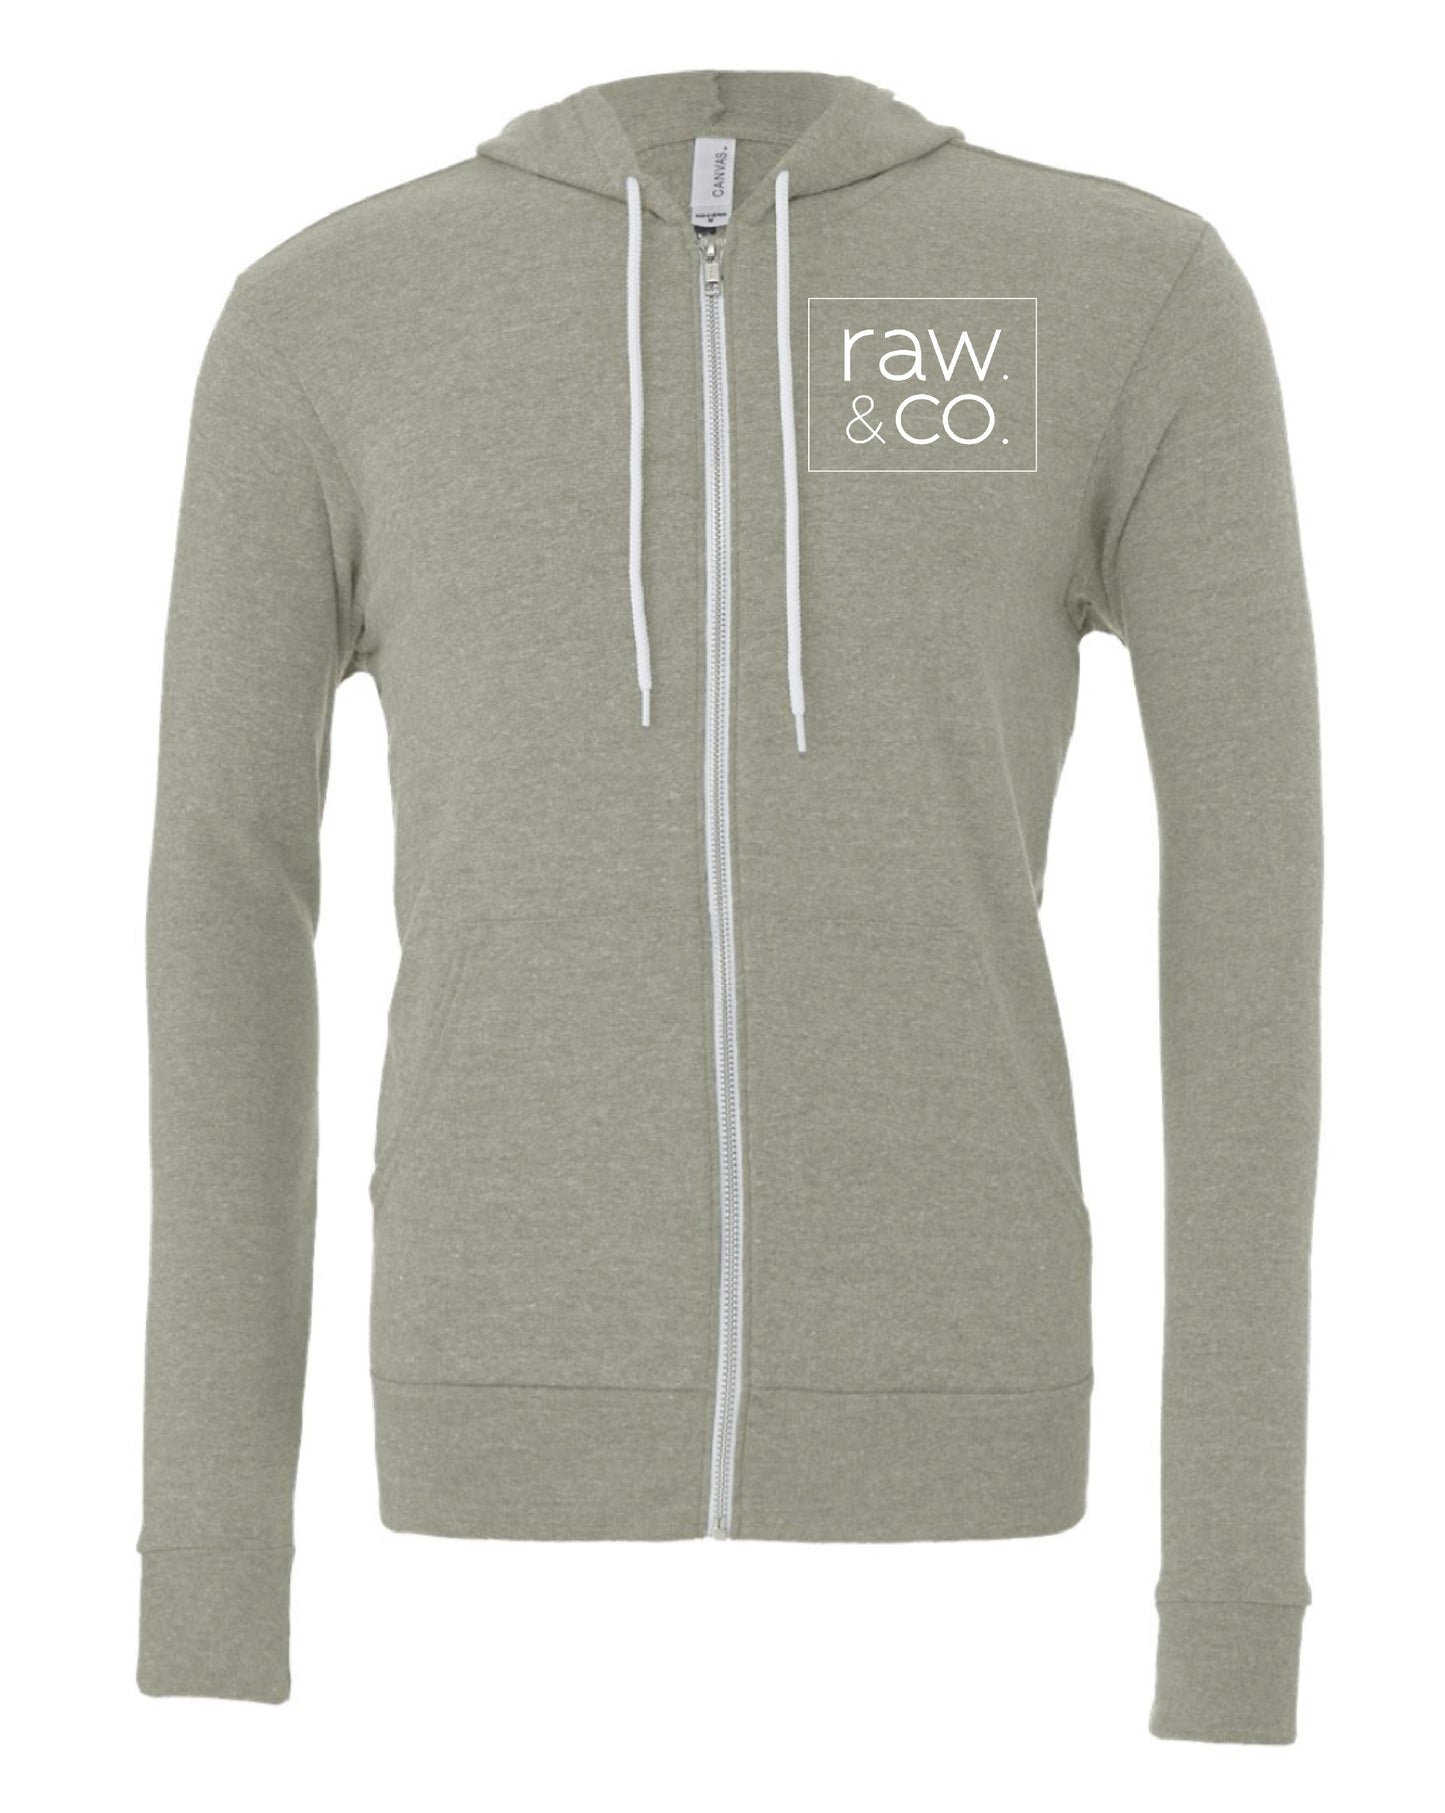 Raw. Full-Zip Sweatshirt